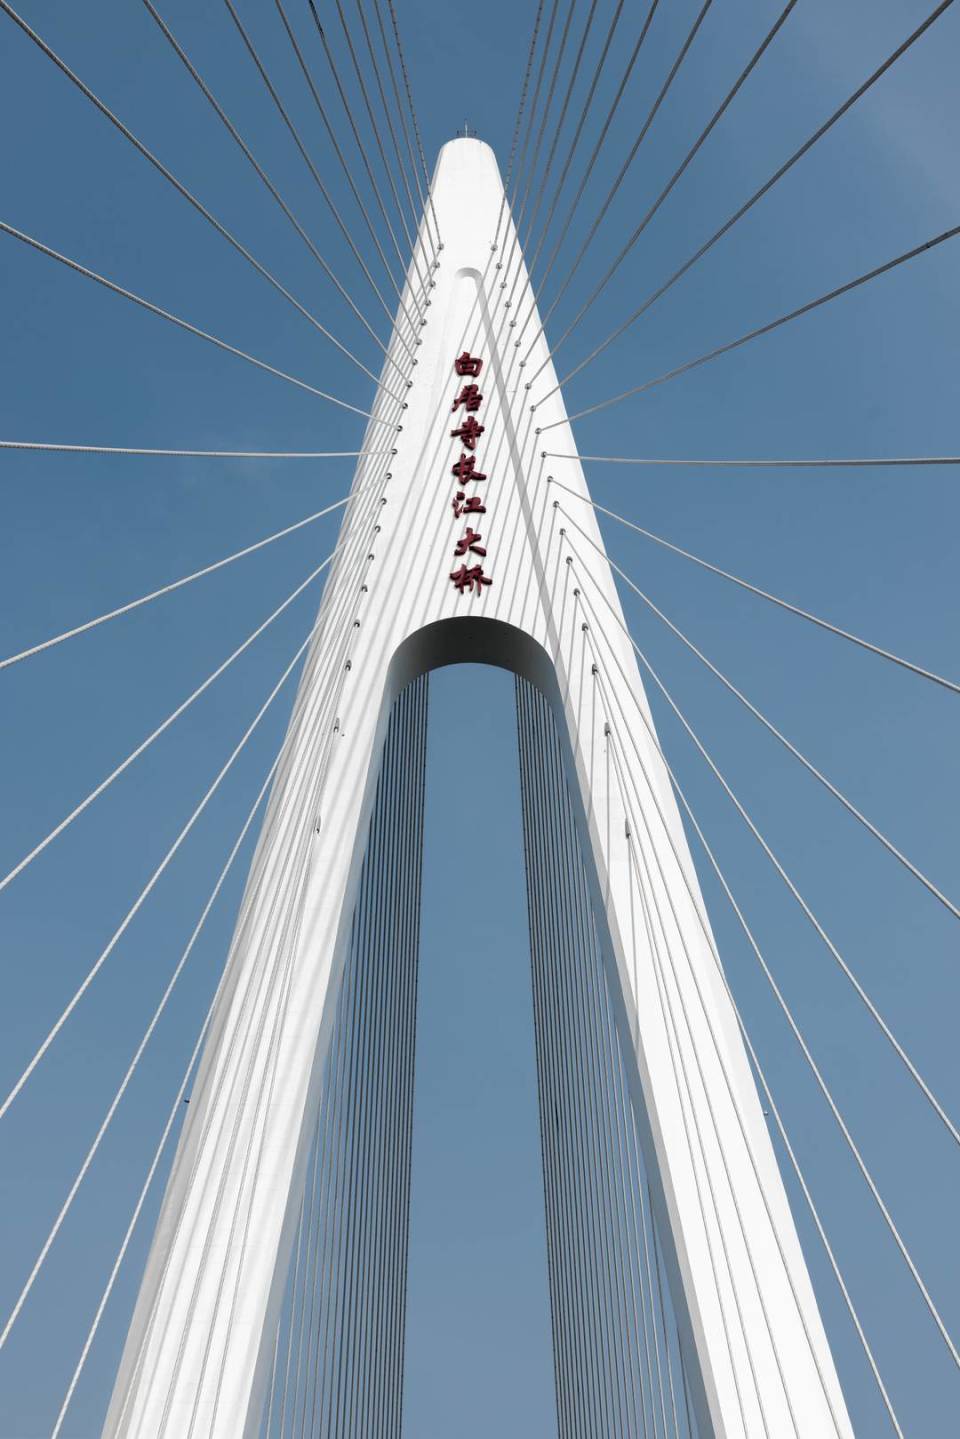 重庆白居寺长江大桥桥塔成网红,听听设计师和摄影师怎么说?